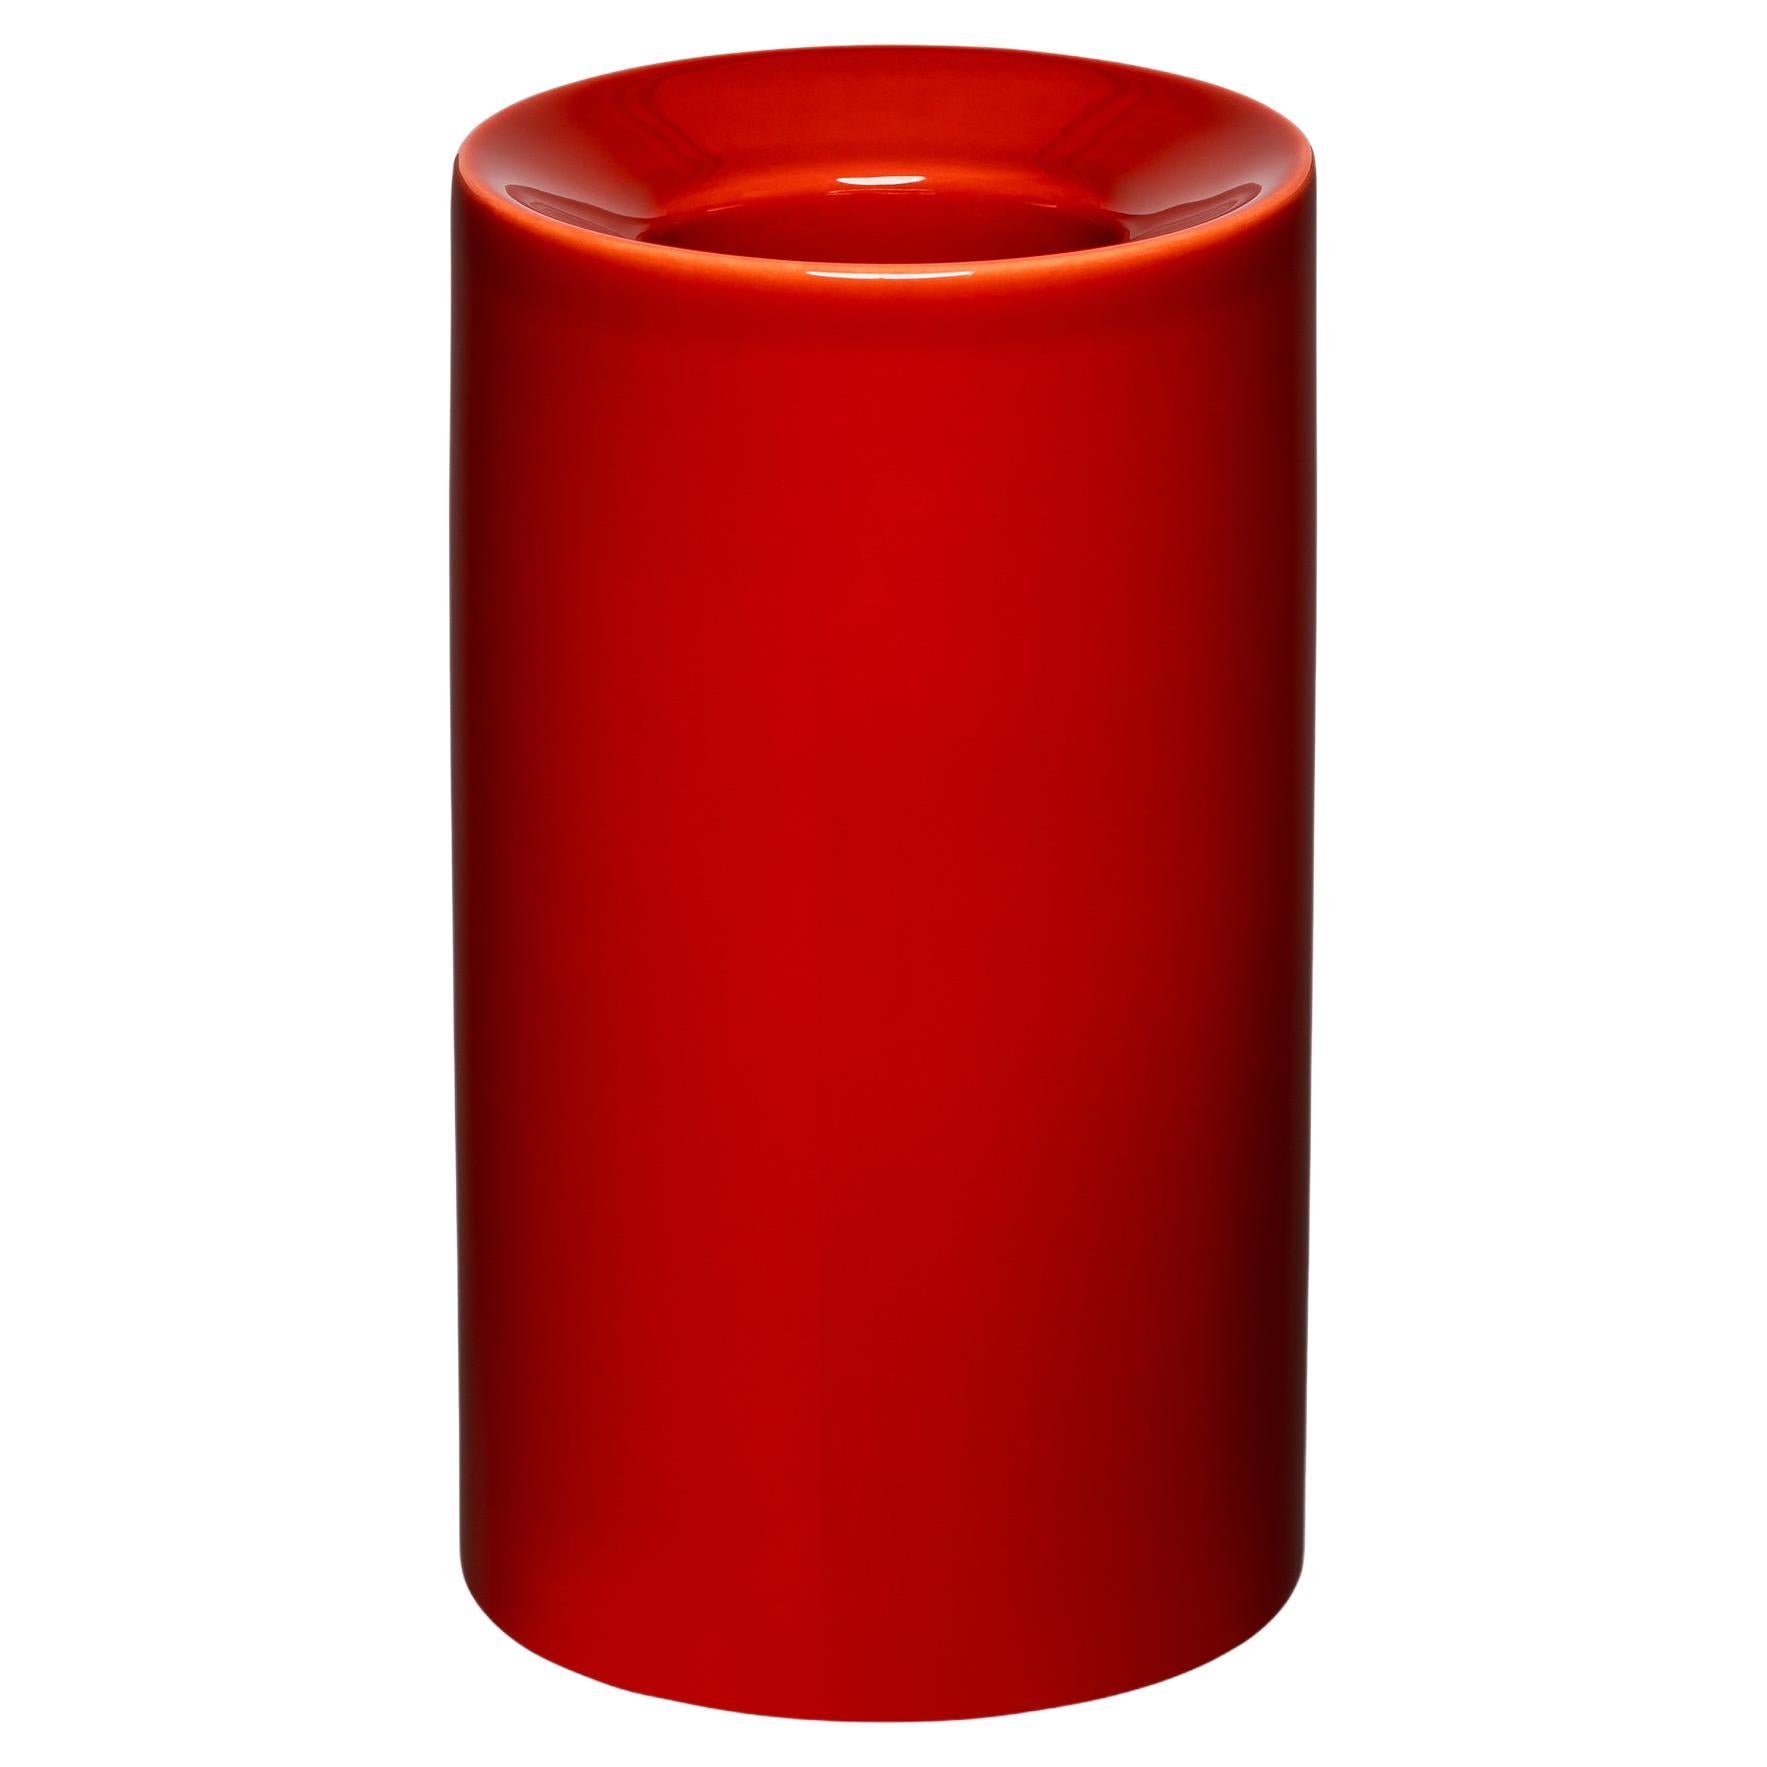 Minimalist Ceramic Vase -  Red For Sale